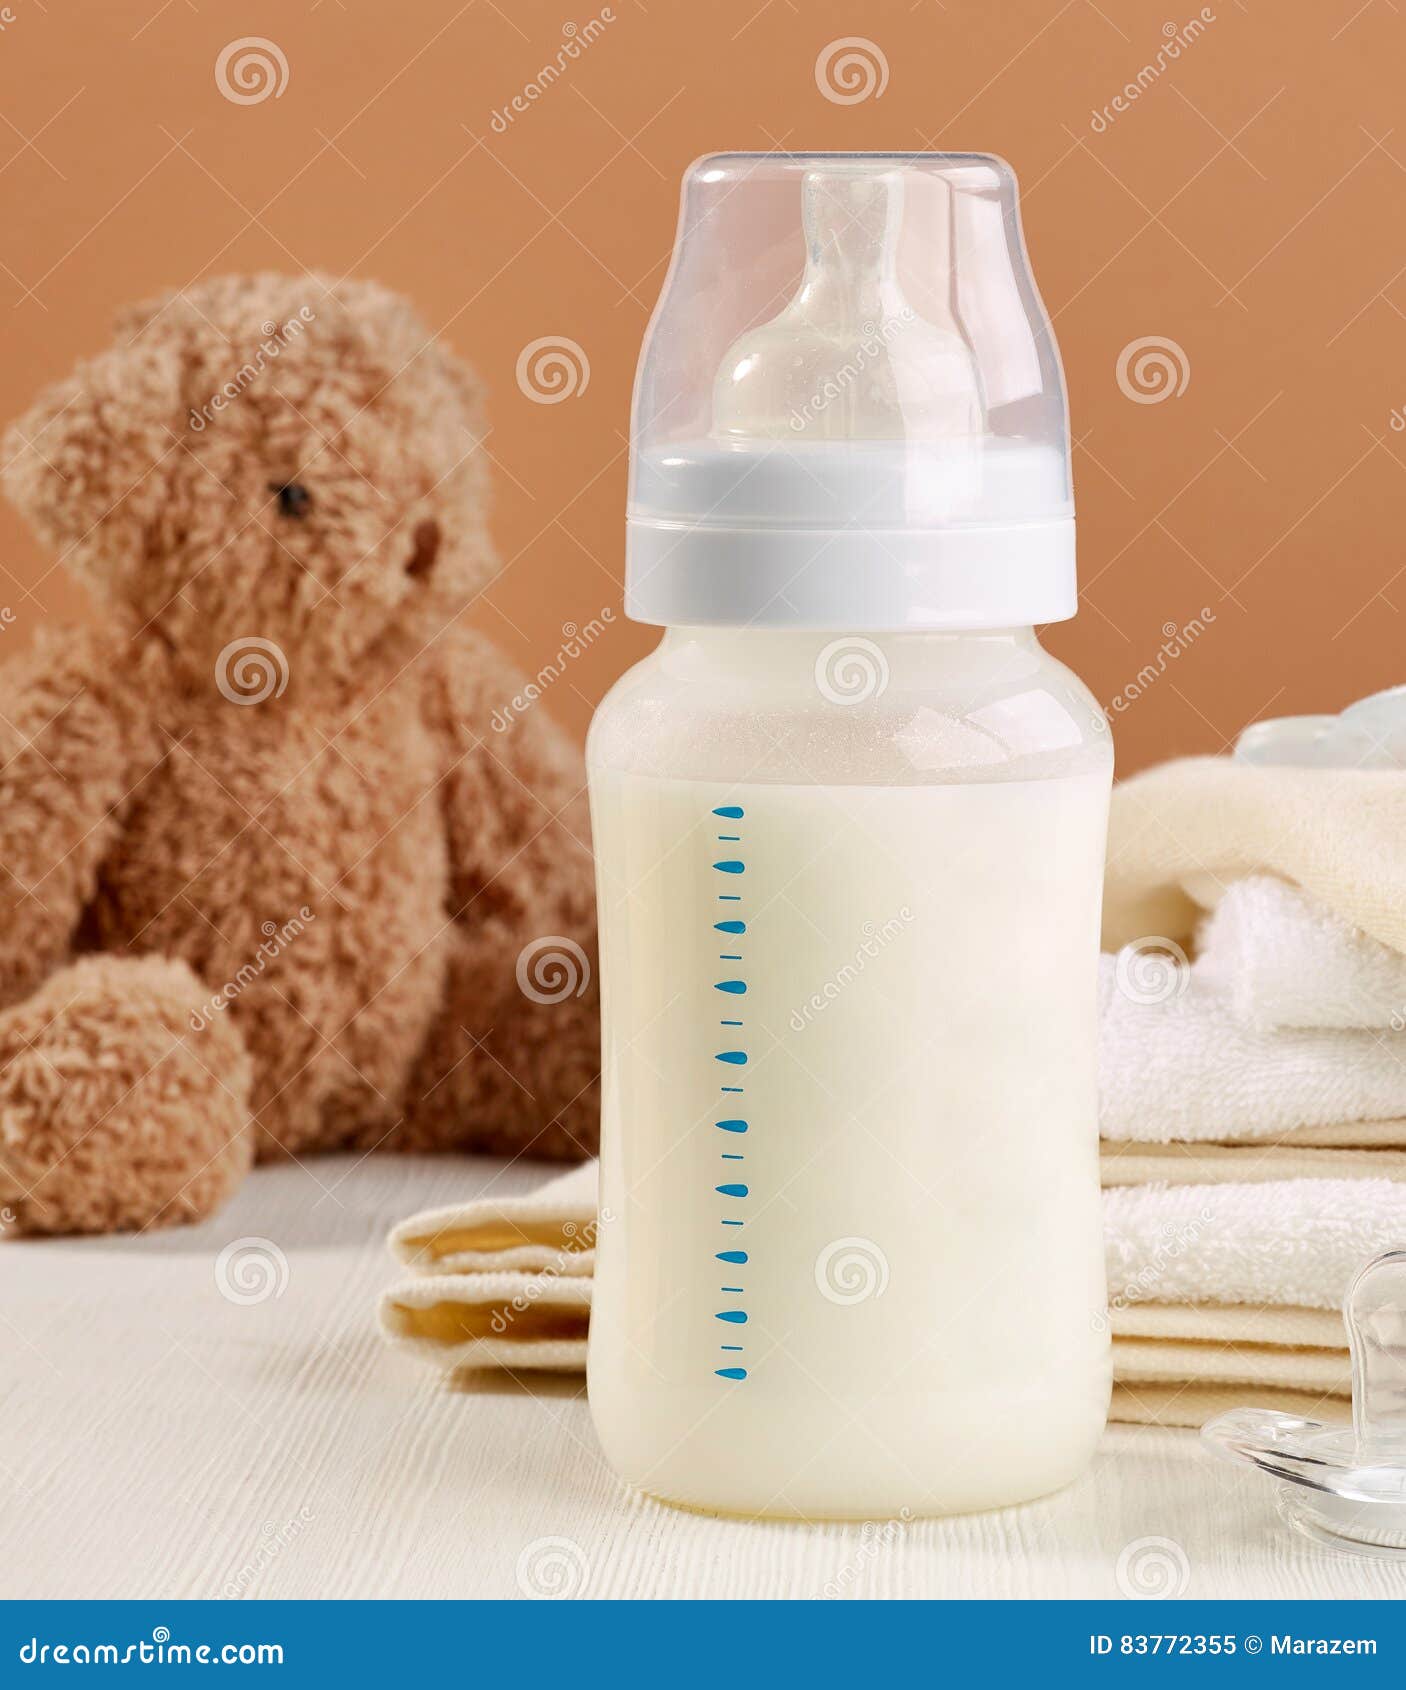 slaaf Vergelding Pelagisch De melkfles van de baby stock afbeelding. Image of baby - 83772355